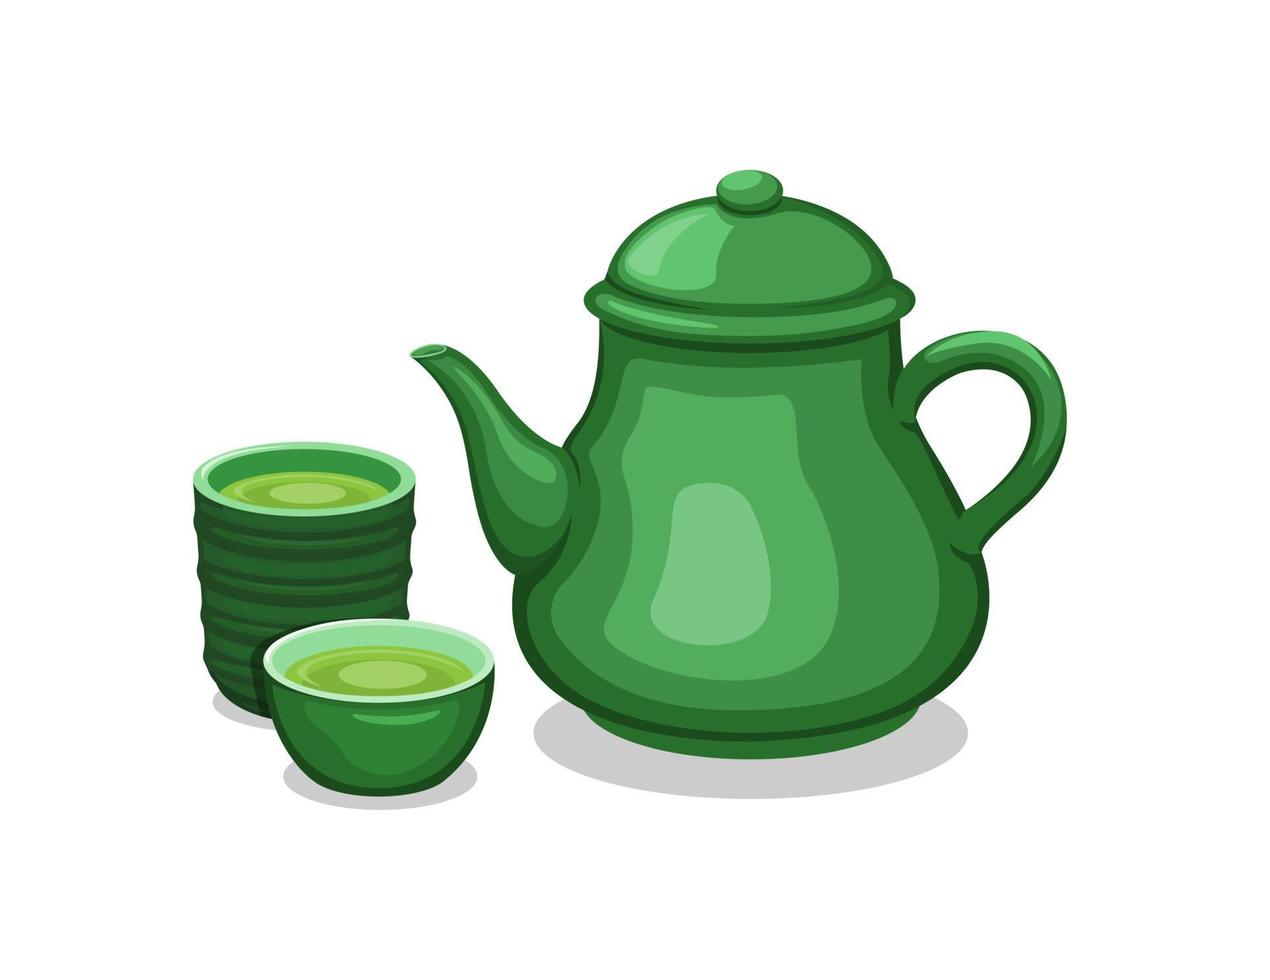 atea en tetera y taza de bebida saludable tradicional asiática conjunto de objetos ilustración vectorial vector